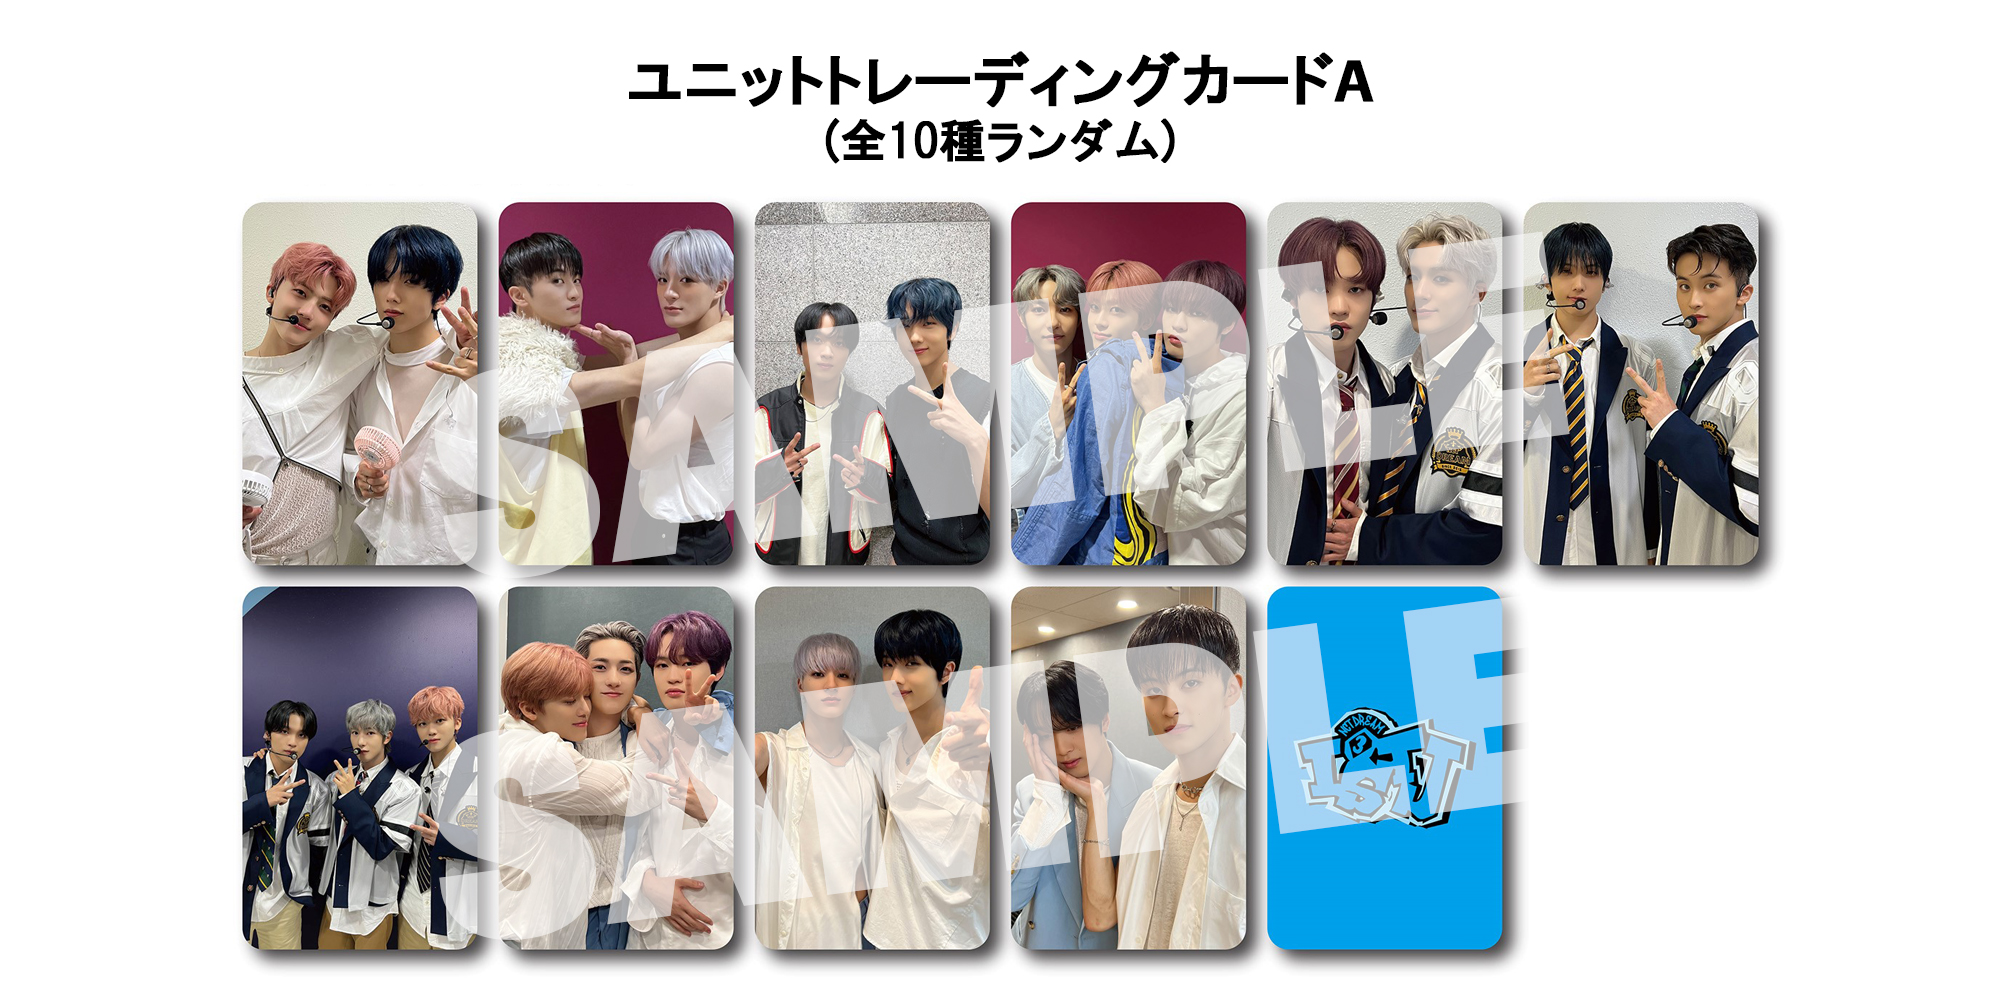 NCT DREAM ユニット トレカ mumo unit photo card-